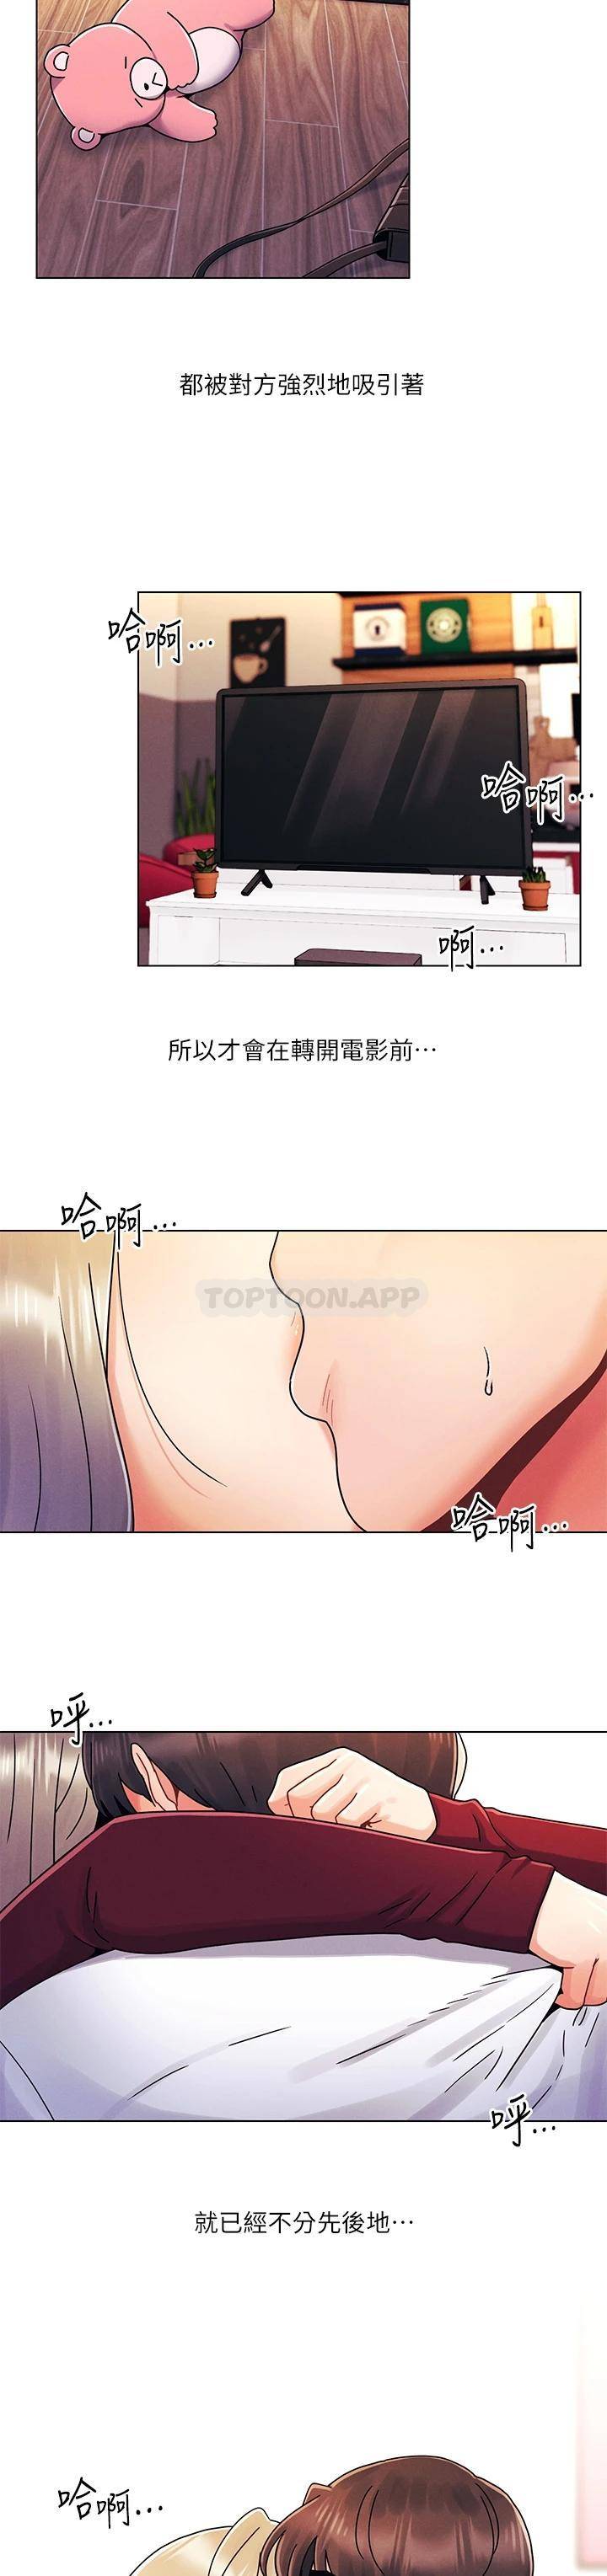 韩国污漫画 今晚是第一次 第22话扛不住女友的积极攻势 28